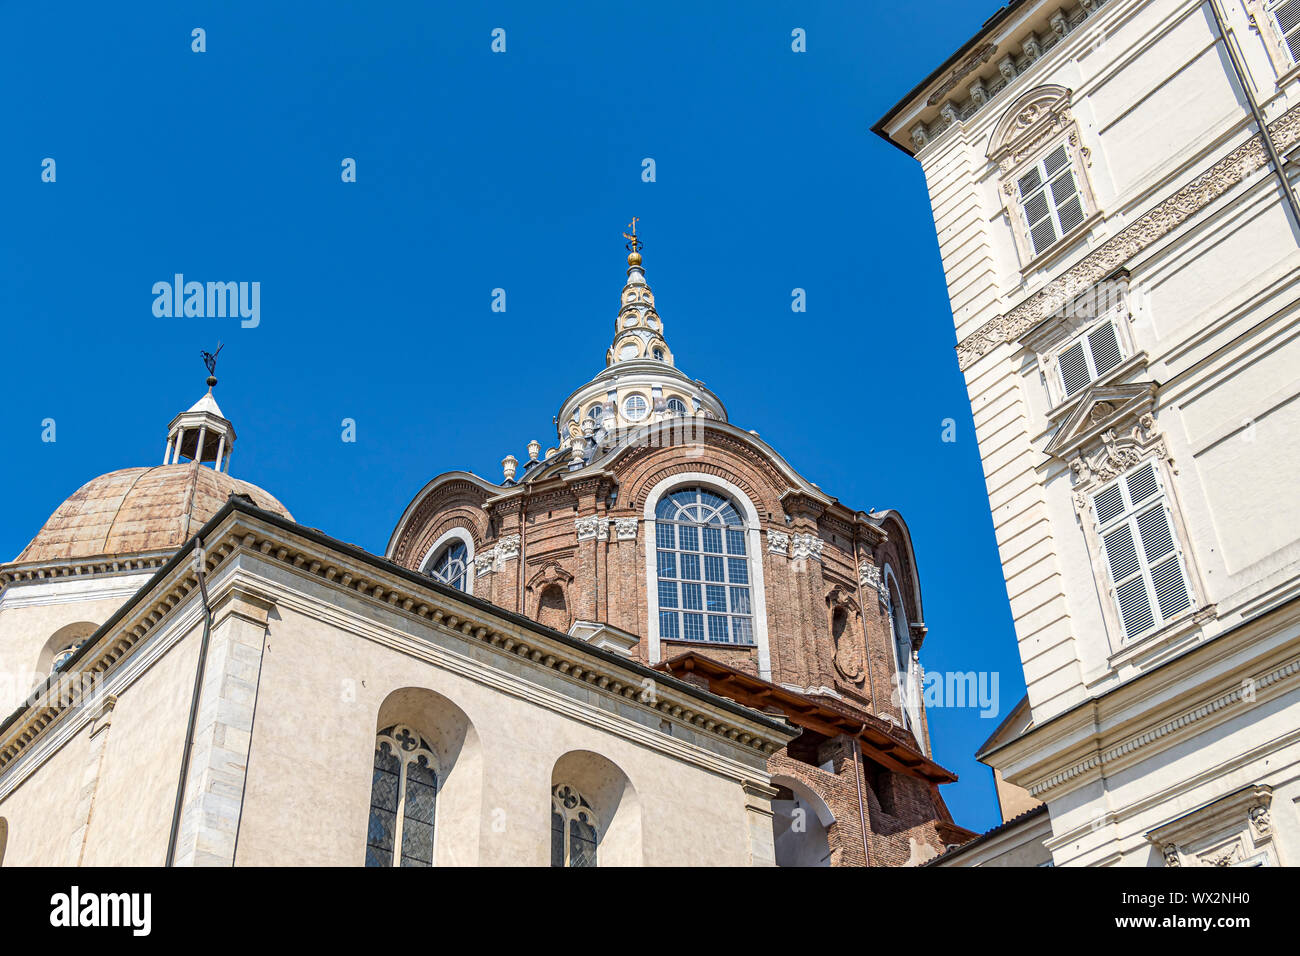 Die Kuppel der Kathedrale von Turin eine römisch-katholische Kathedrale der Hl. Johannes der Täufer, Turin, Italien Stockfoto